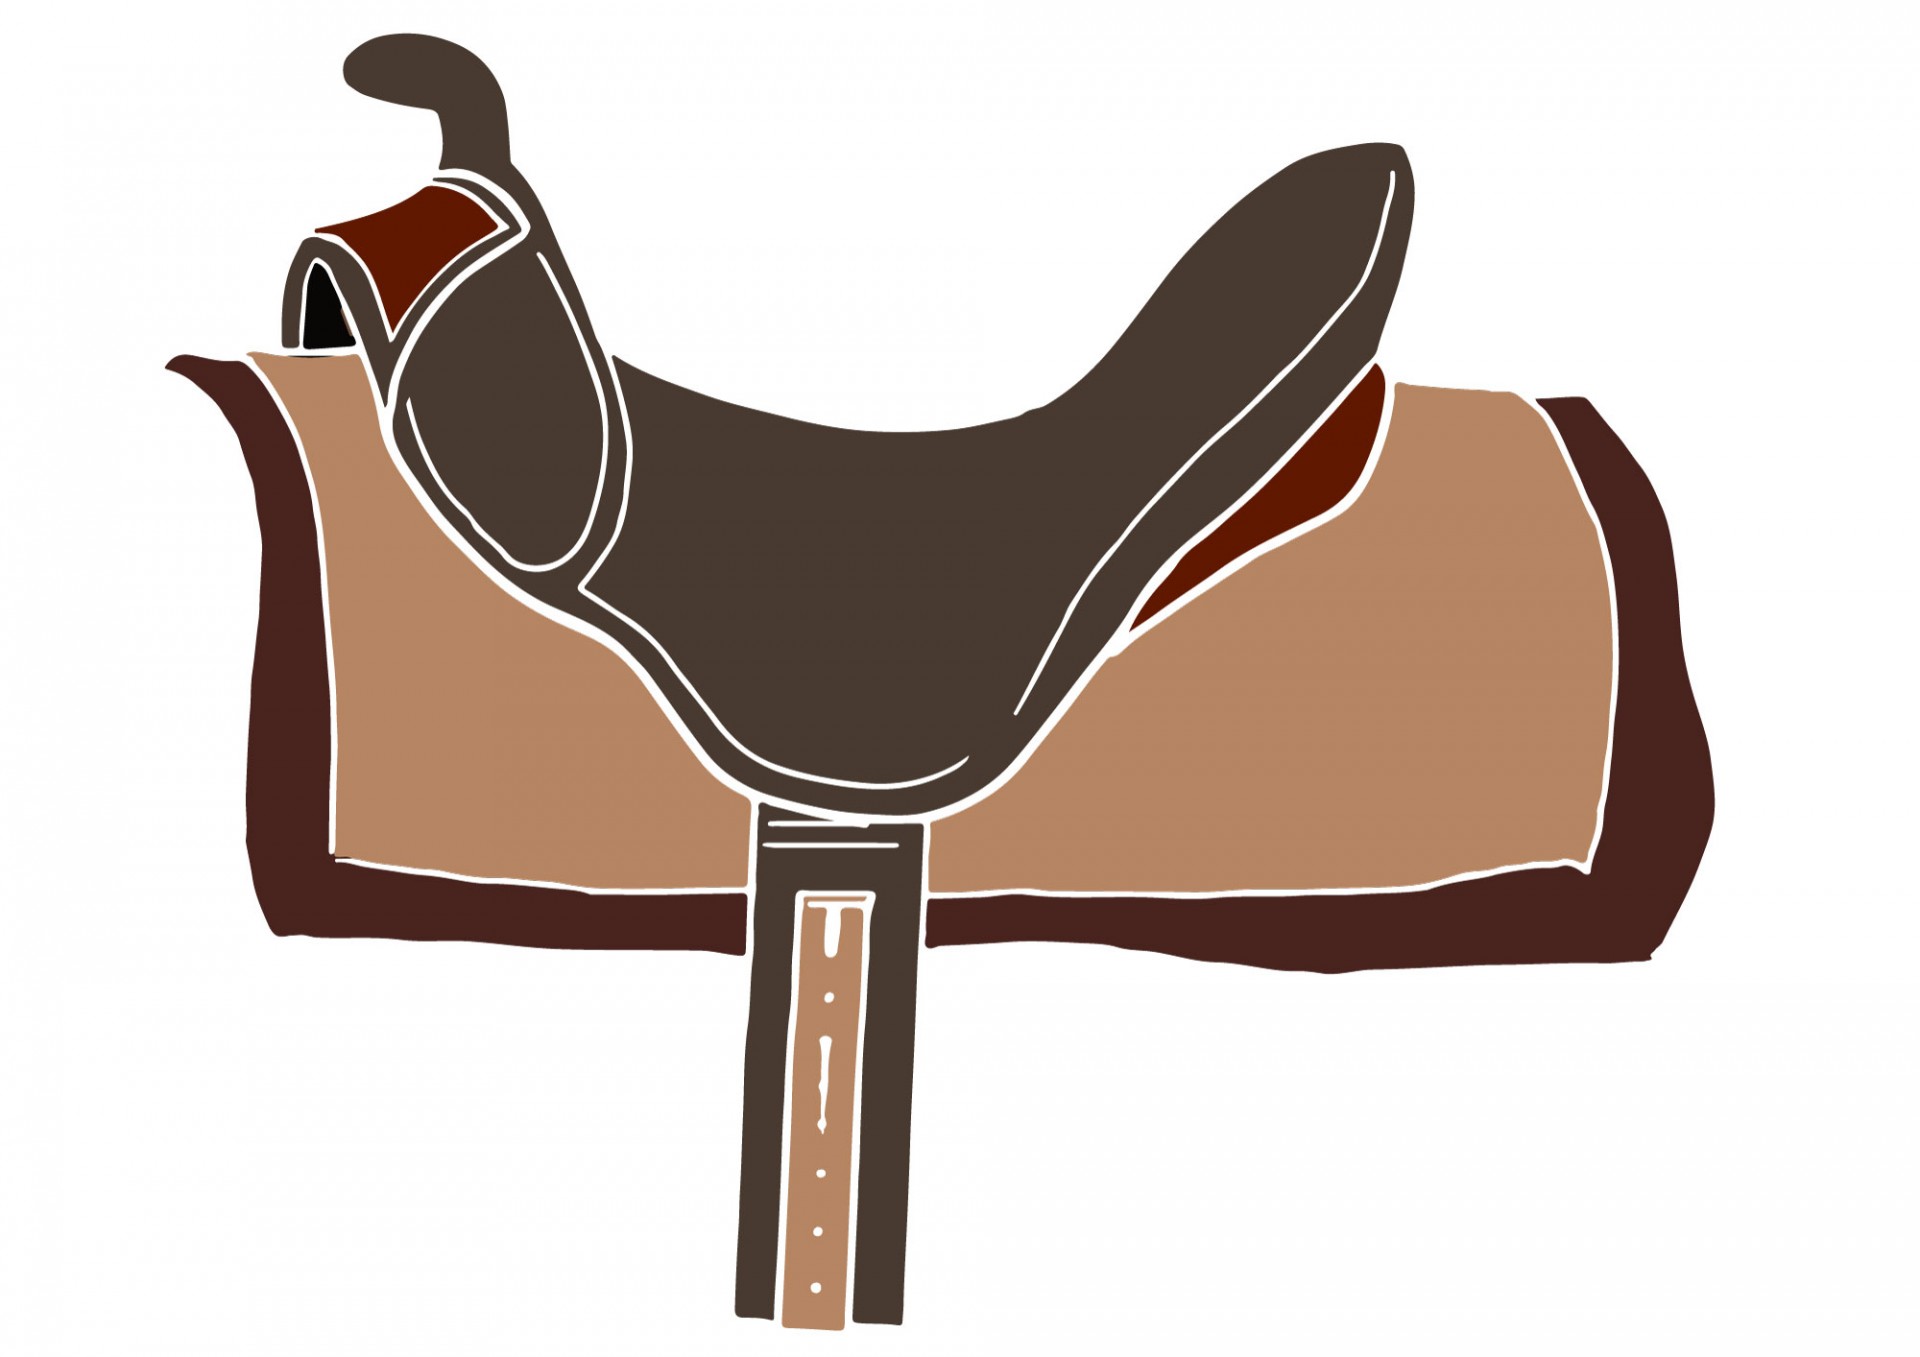 Western saddle,western saddles,leather saddles,saddle clipart,saddle